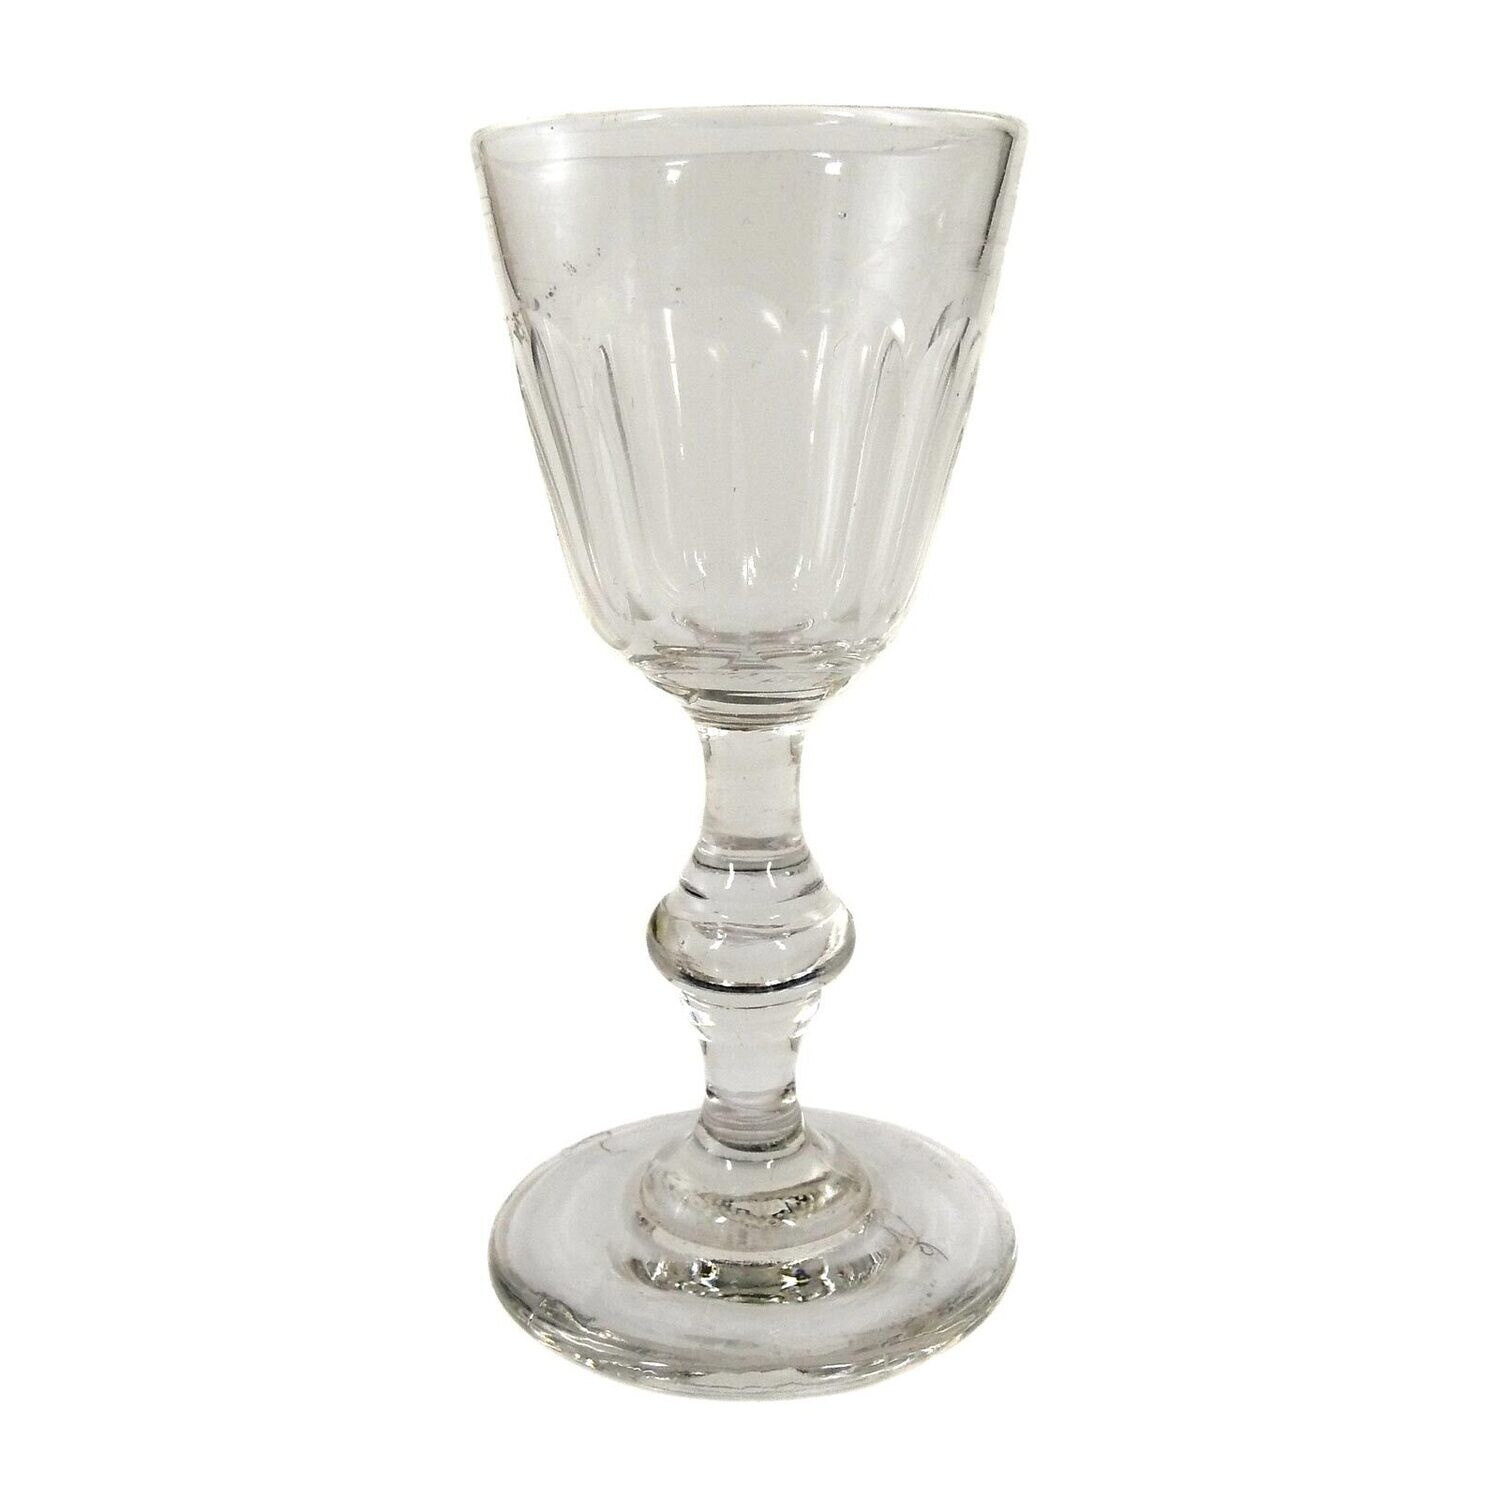 Schnapsglas aus farblosem Glas mit Bogenfacetten und getreppten Nodus um 1870-80